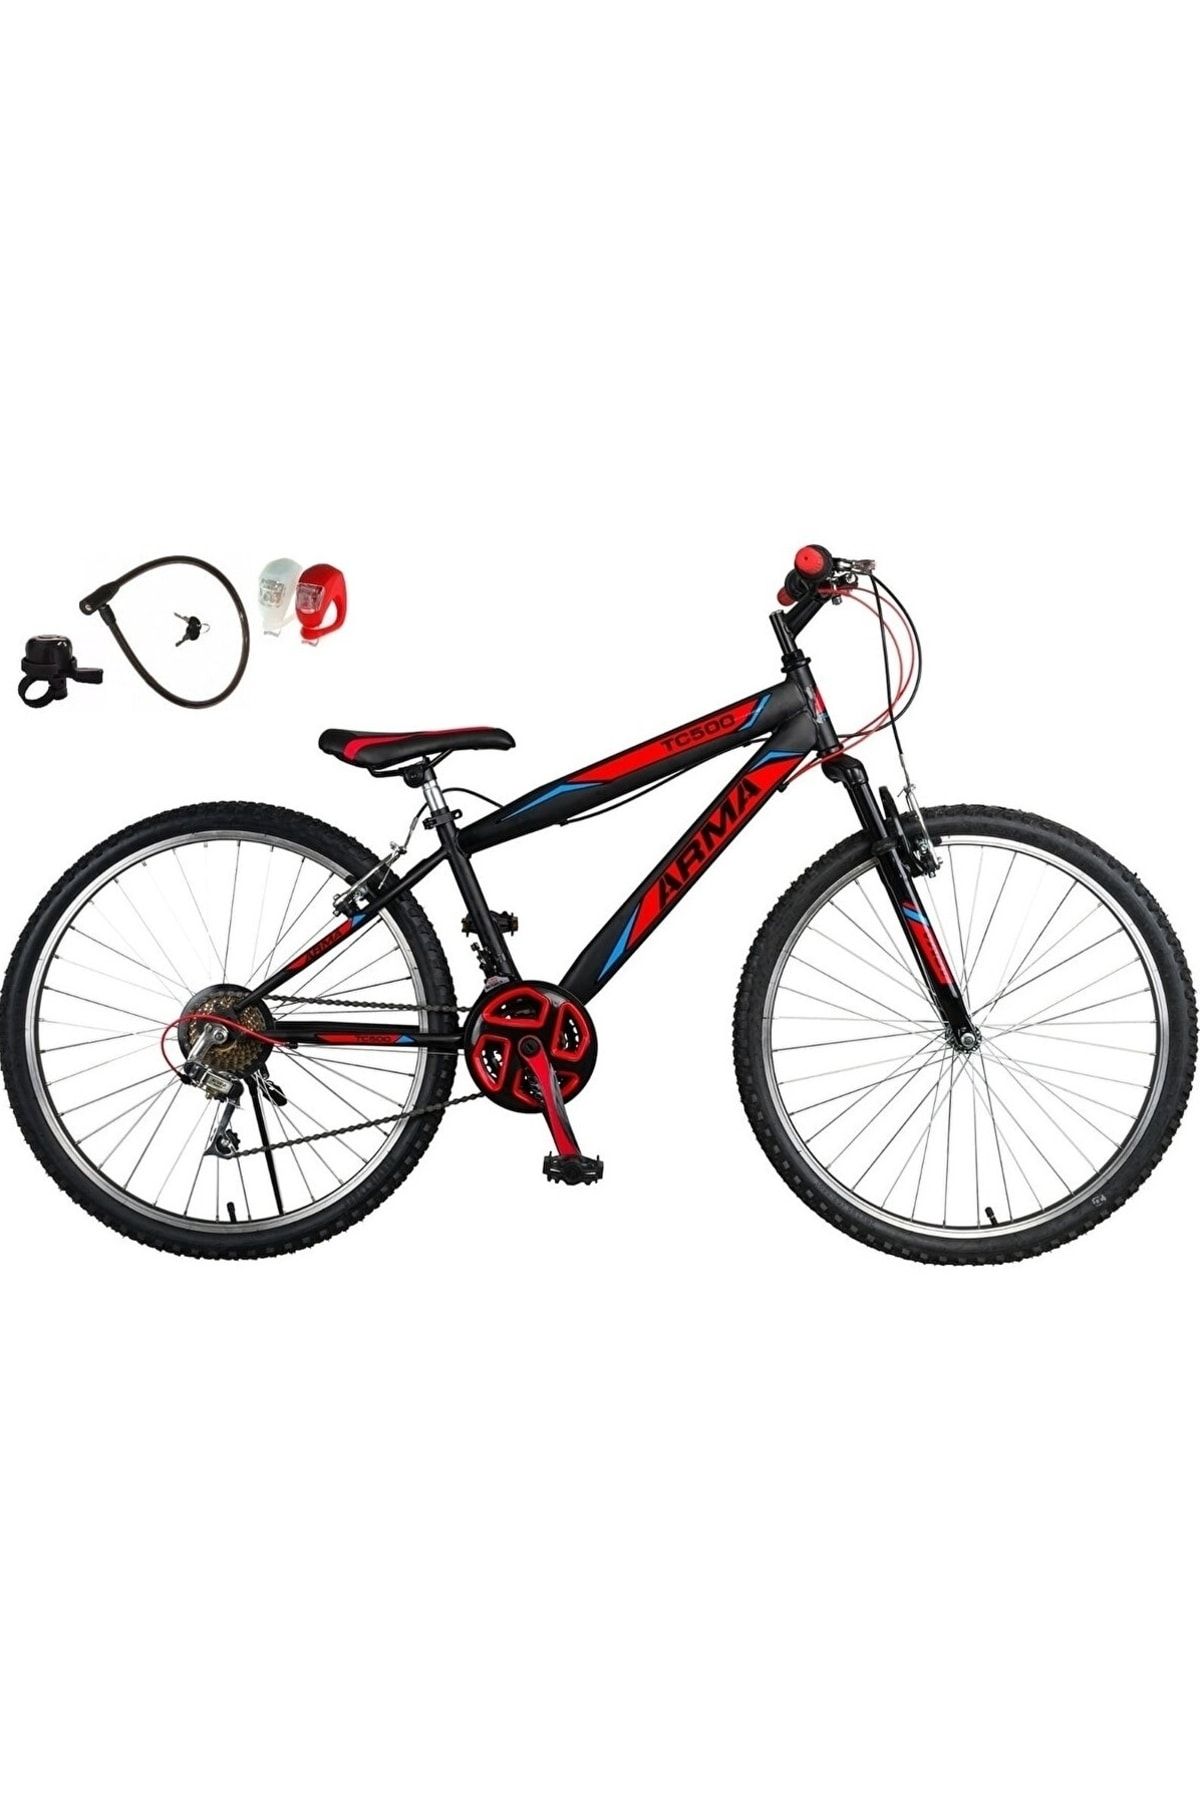 Tunca Rvl Arma 24 Jant Ön Amartisörlü Bisiklet Dağ Bisikleti Vitesli Bisiklet Kırmızı (hediyeli)